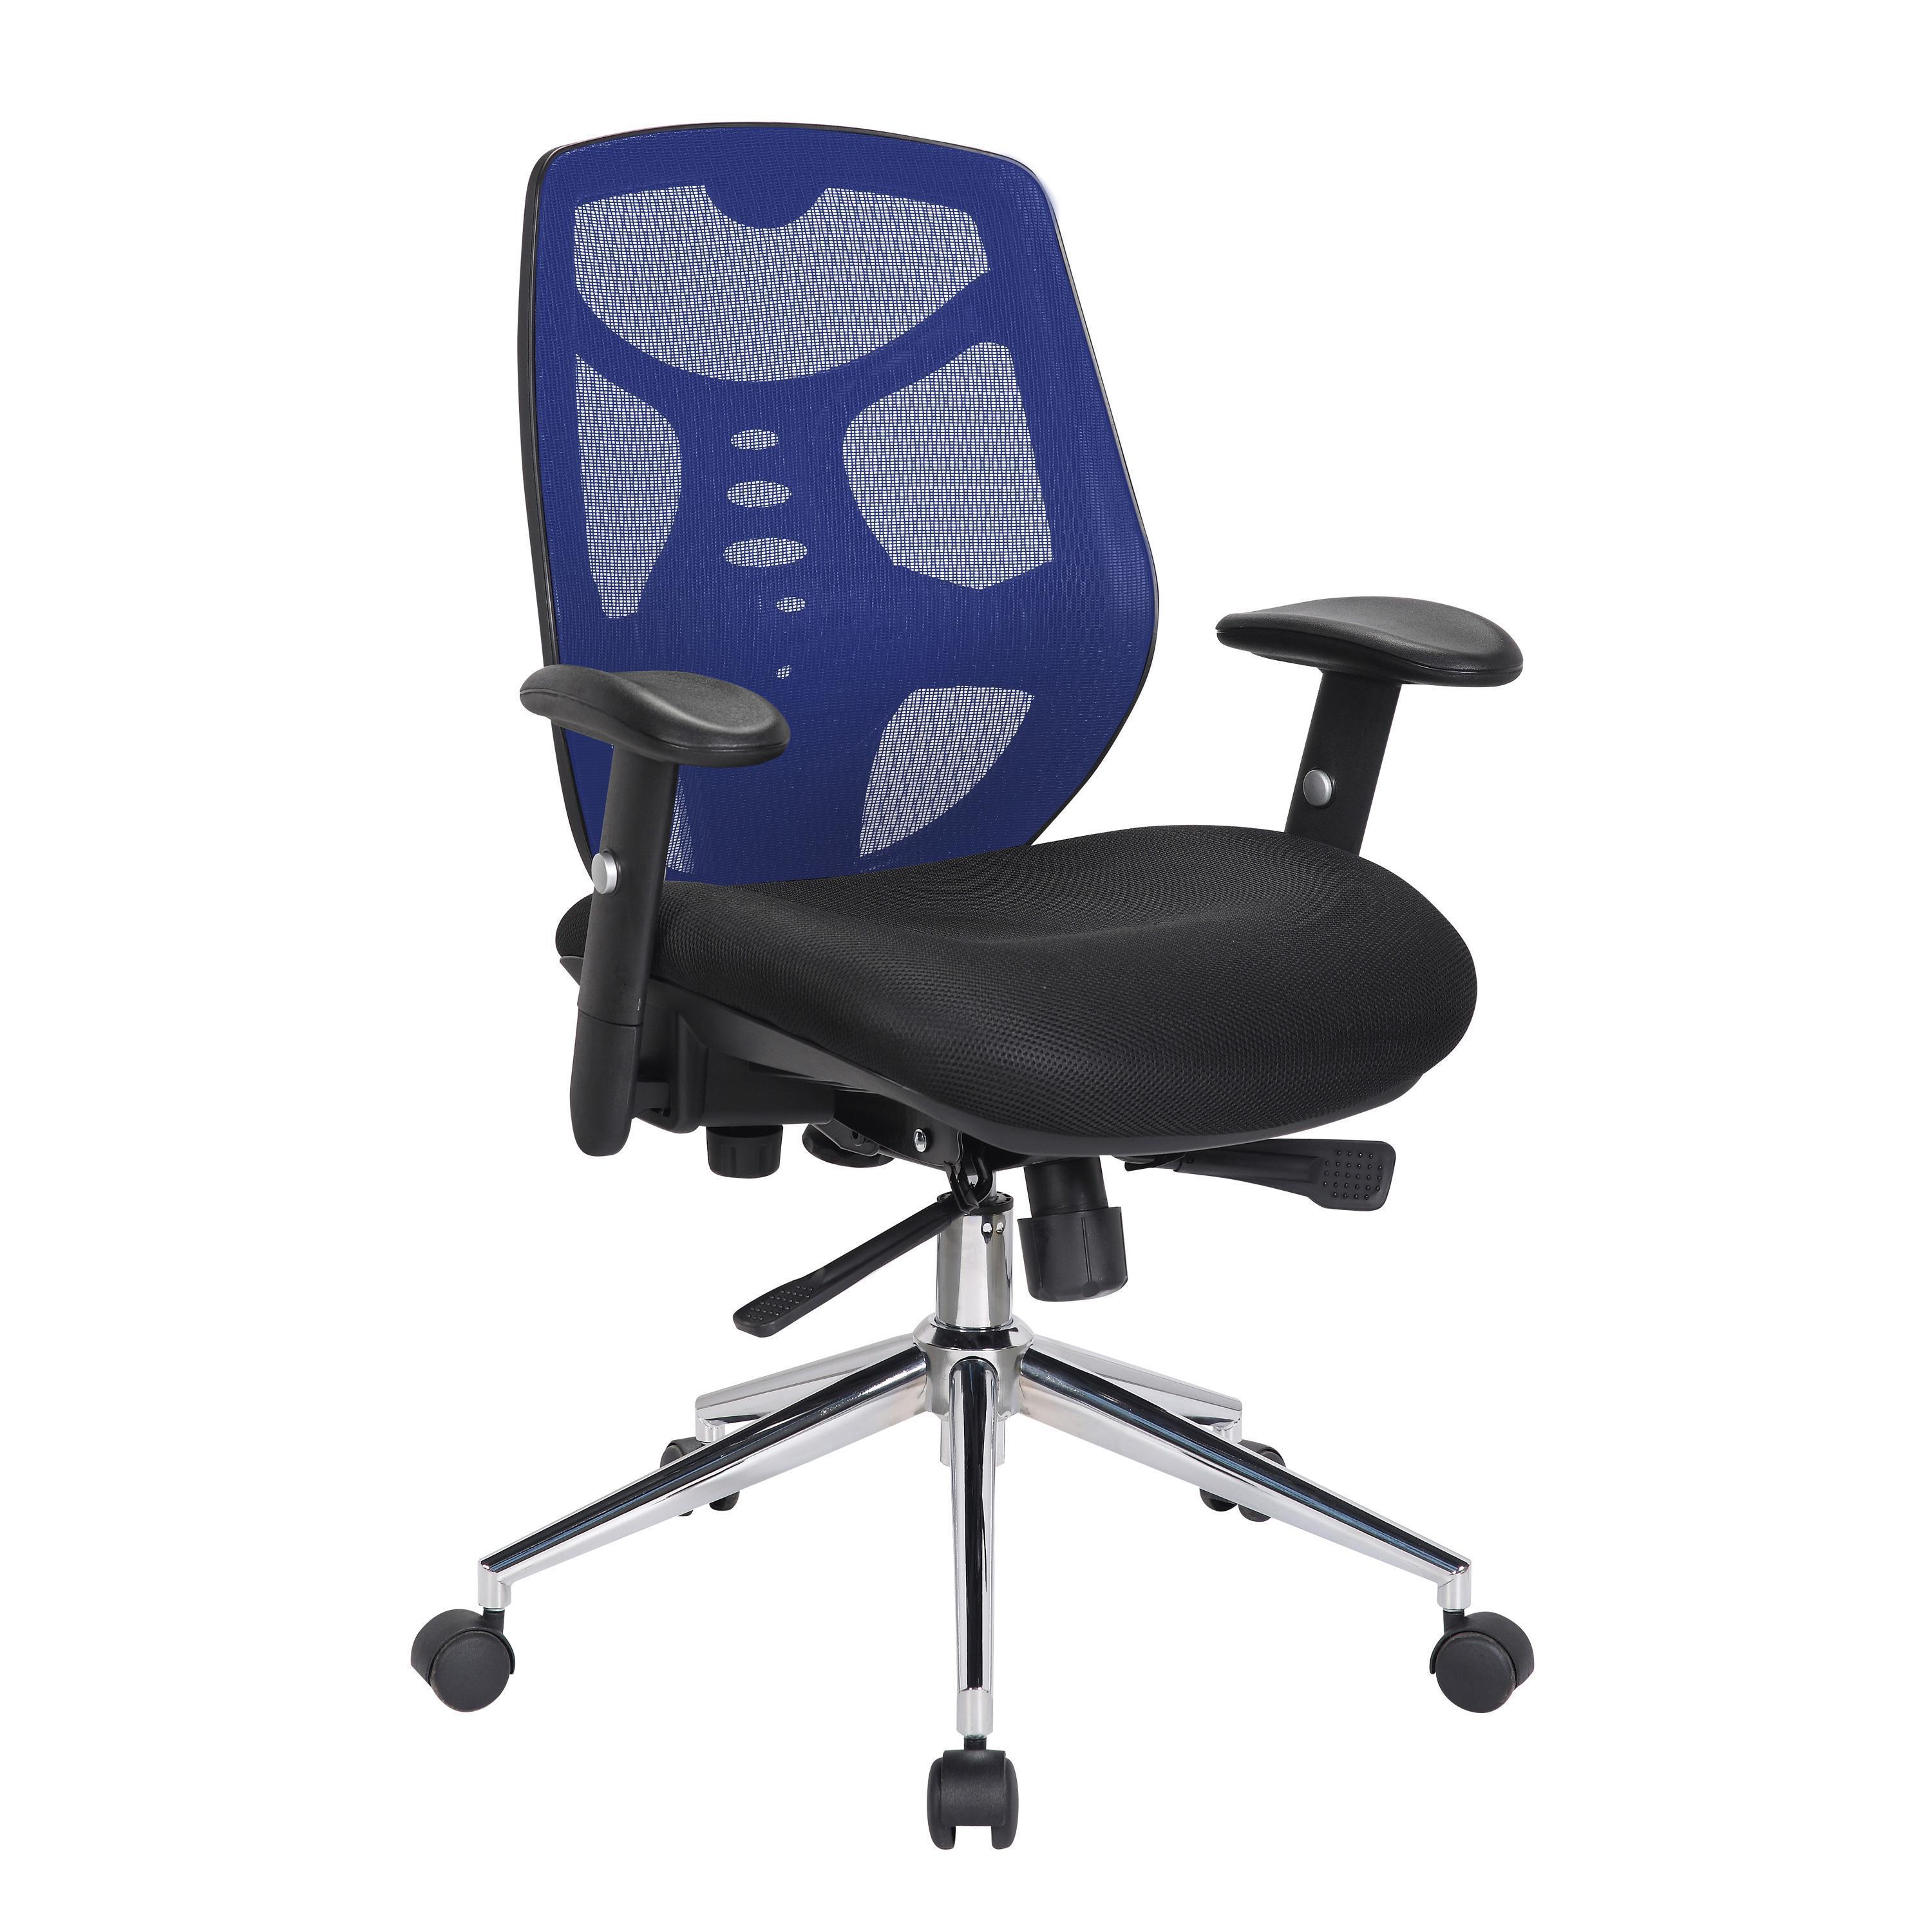 Ergonomischer Bürostuhl MANTRA, spektakuläre Rückenlehne, verstellbare Armlehnen, Farbe Blau